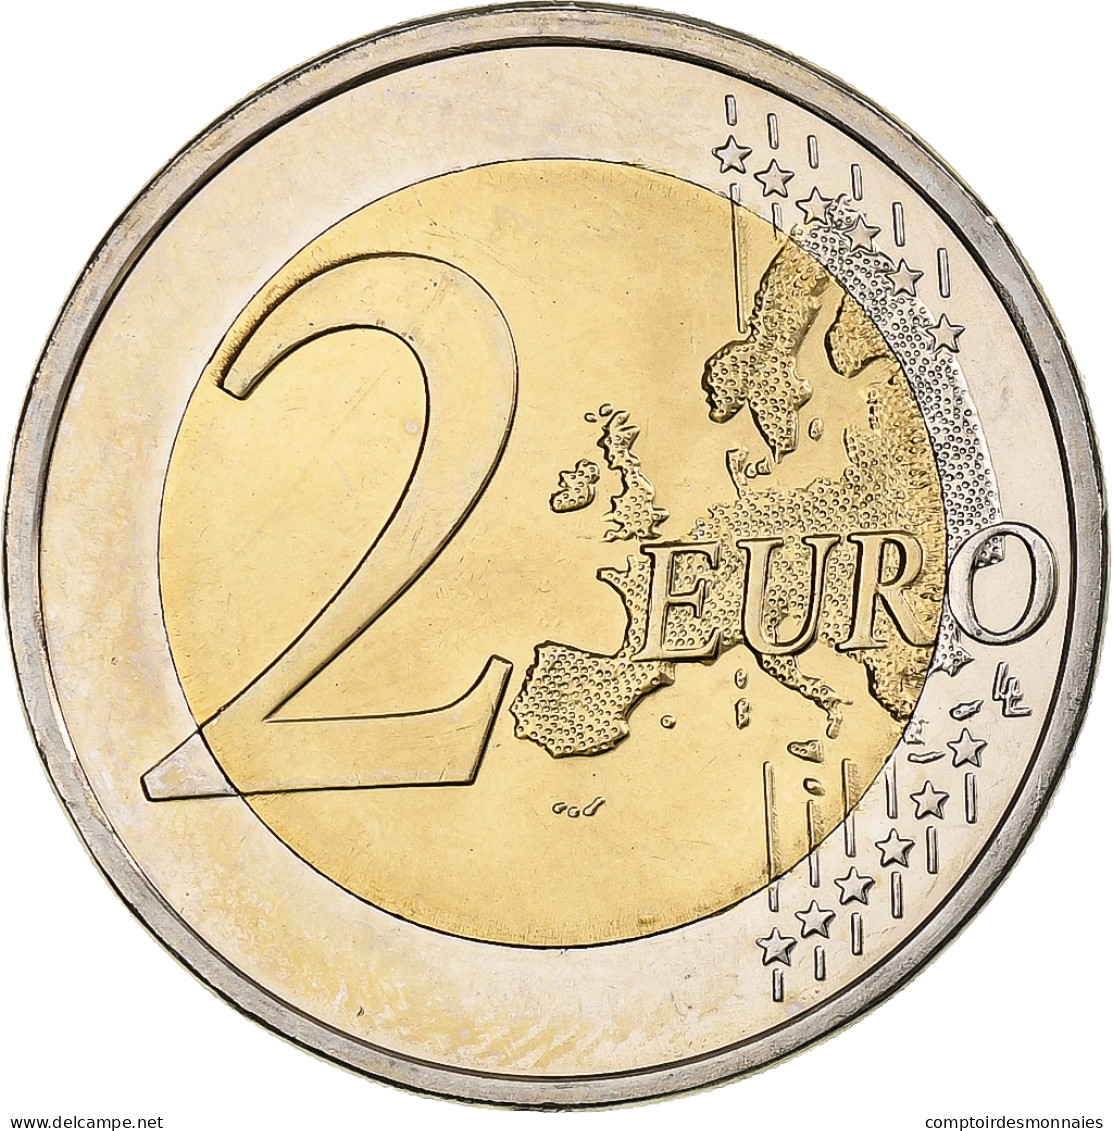 Chypre, 2 Euro, 2008, BU, FDC, Bimétallique, KM:85 - Cyprus